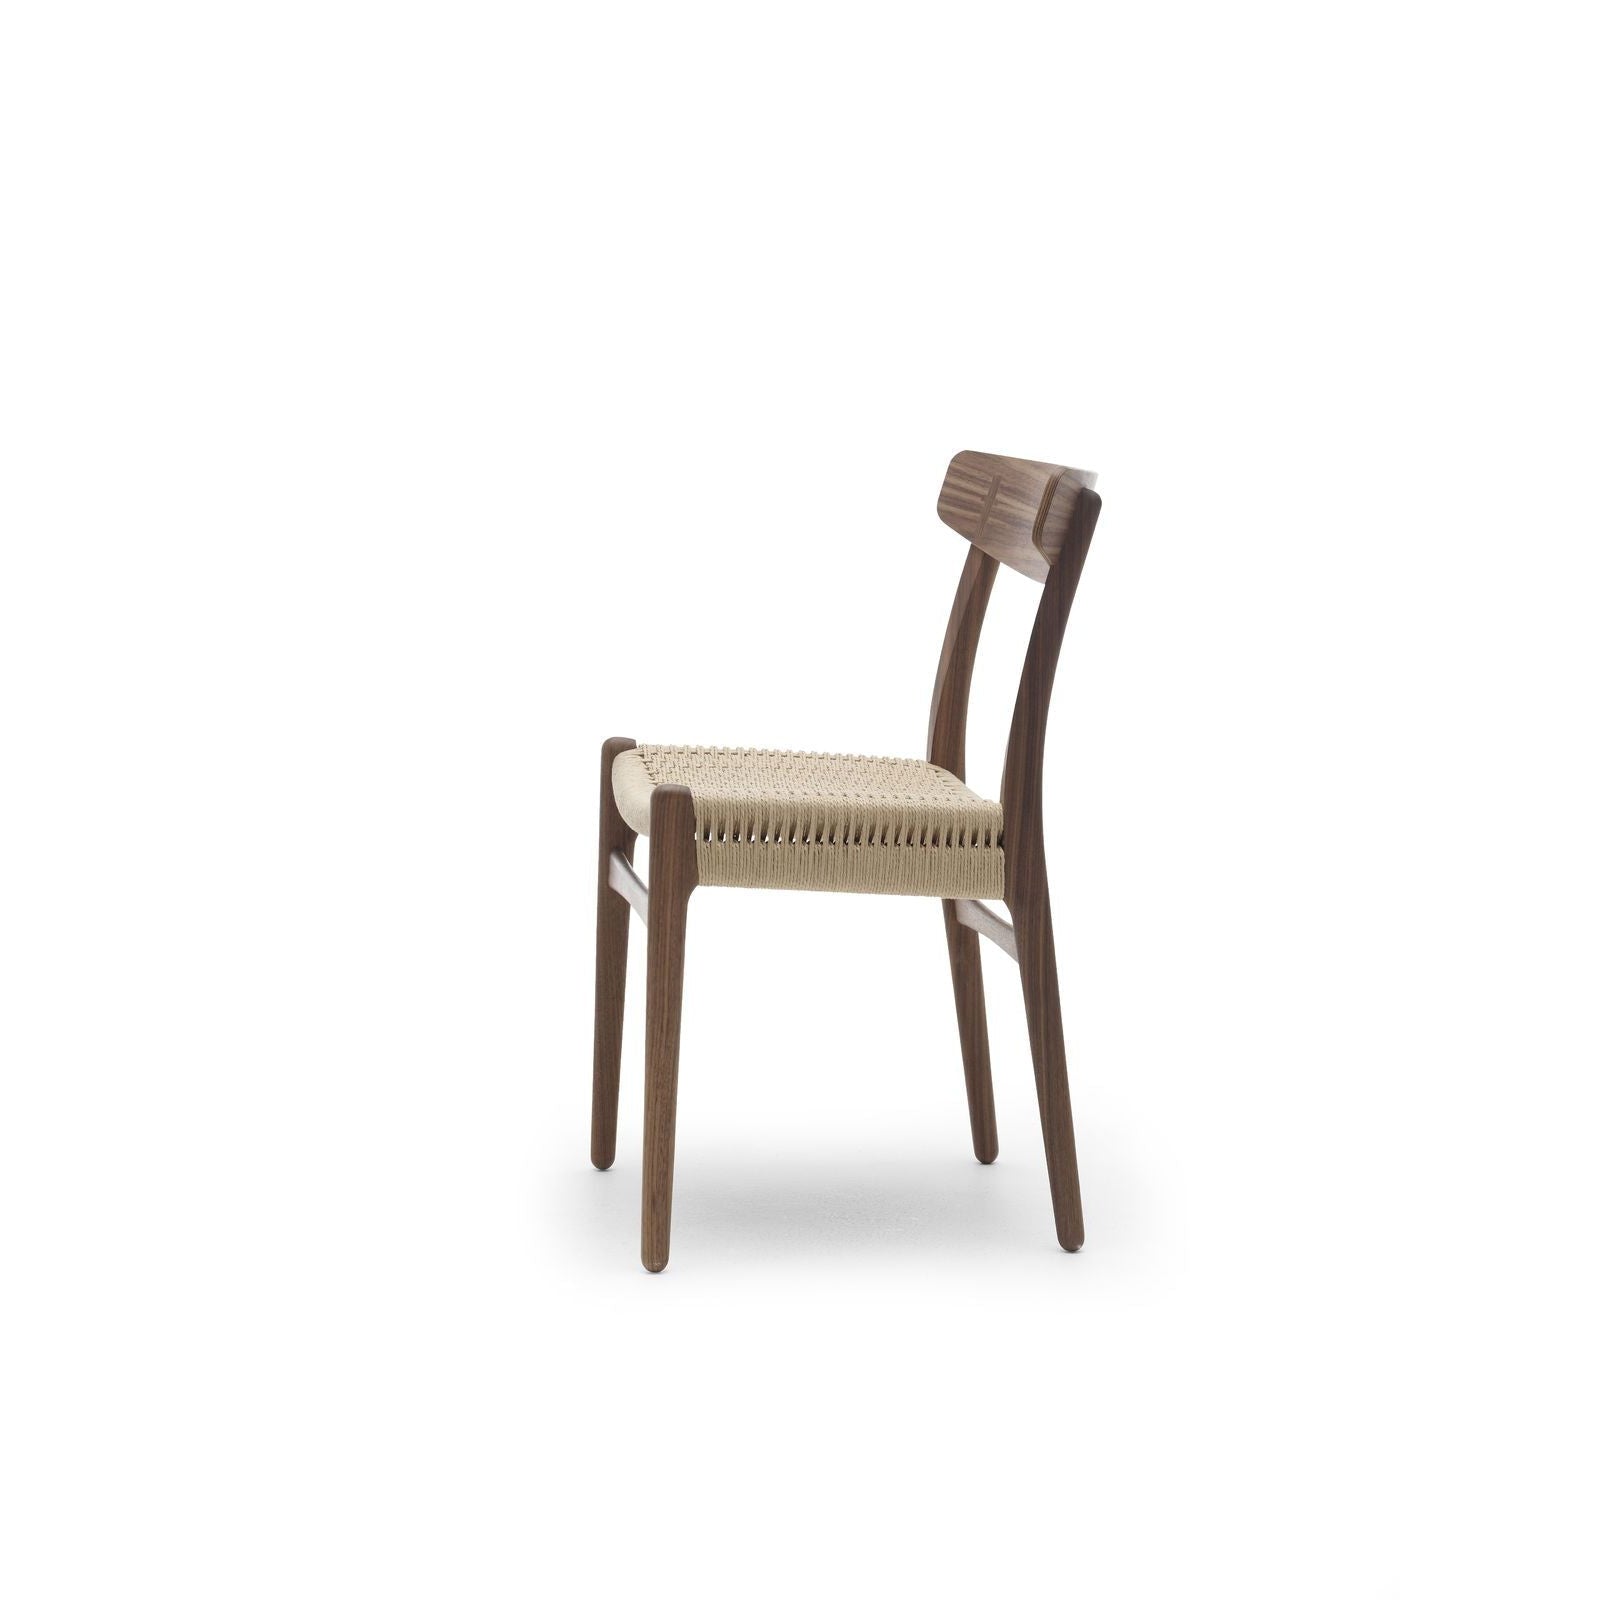 Carl Hansen CH23 -stol, oljad valnöt/naturlig sladd/valnötstöd